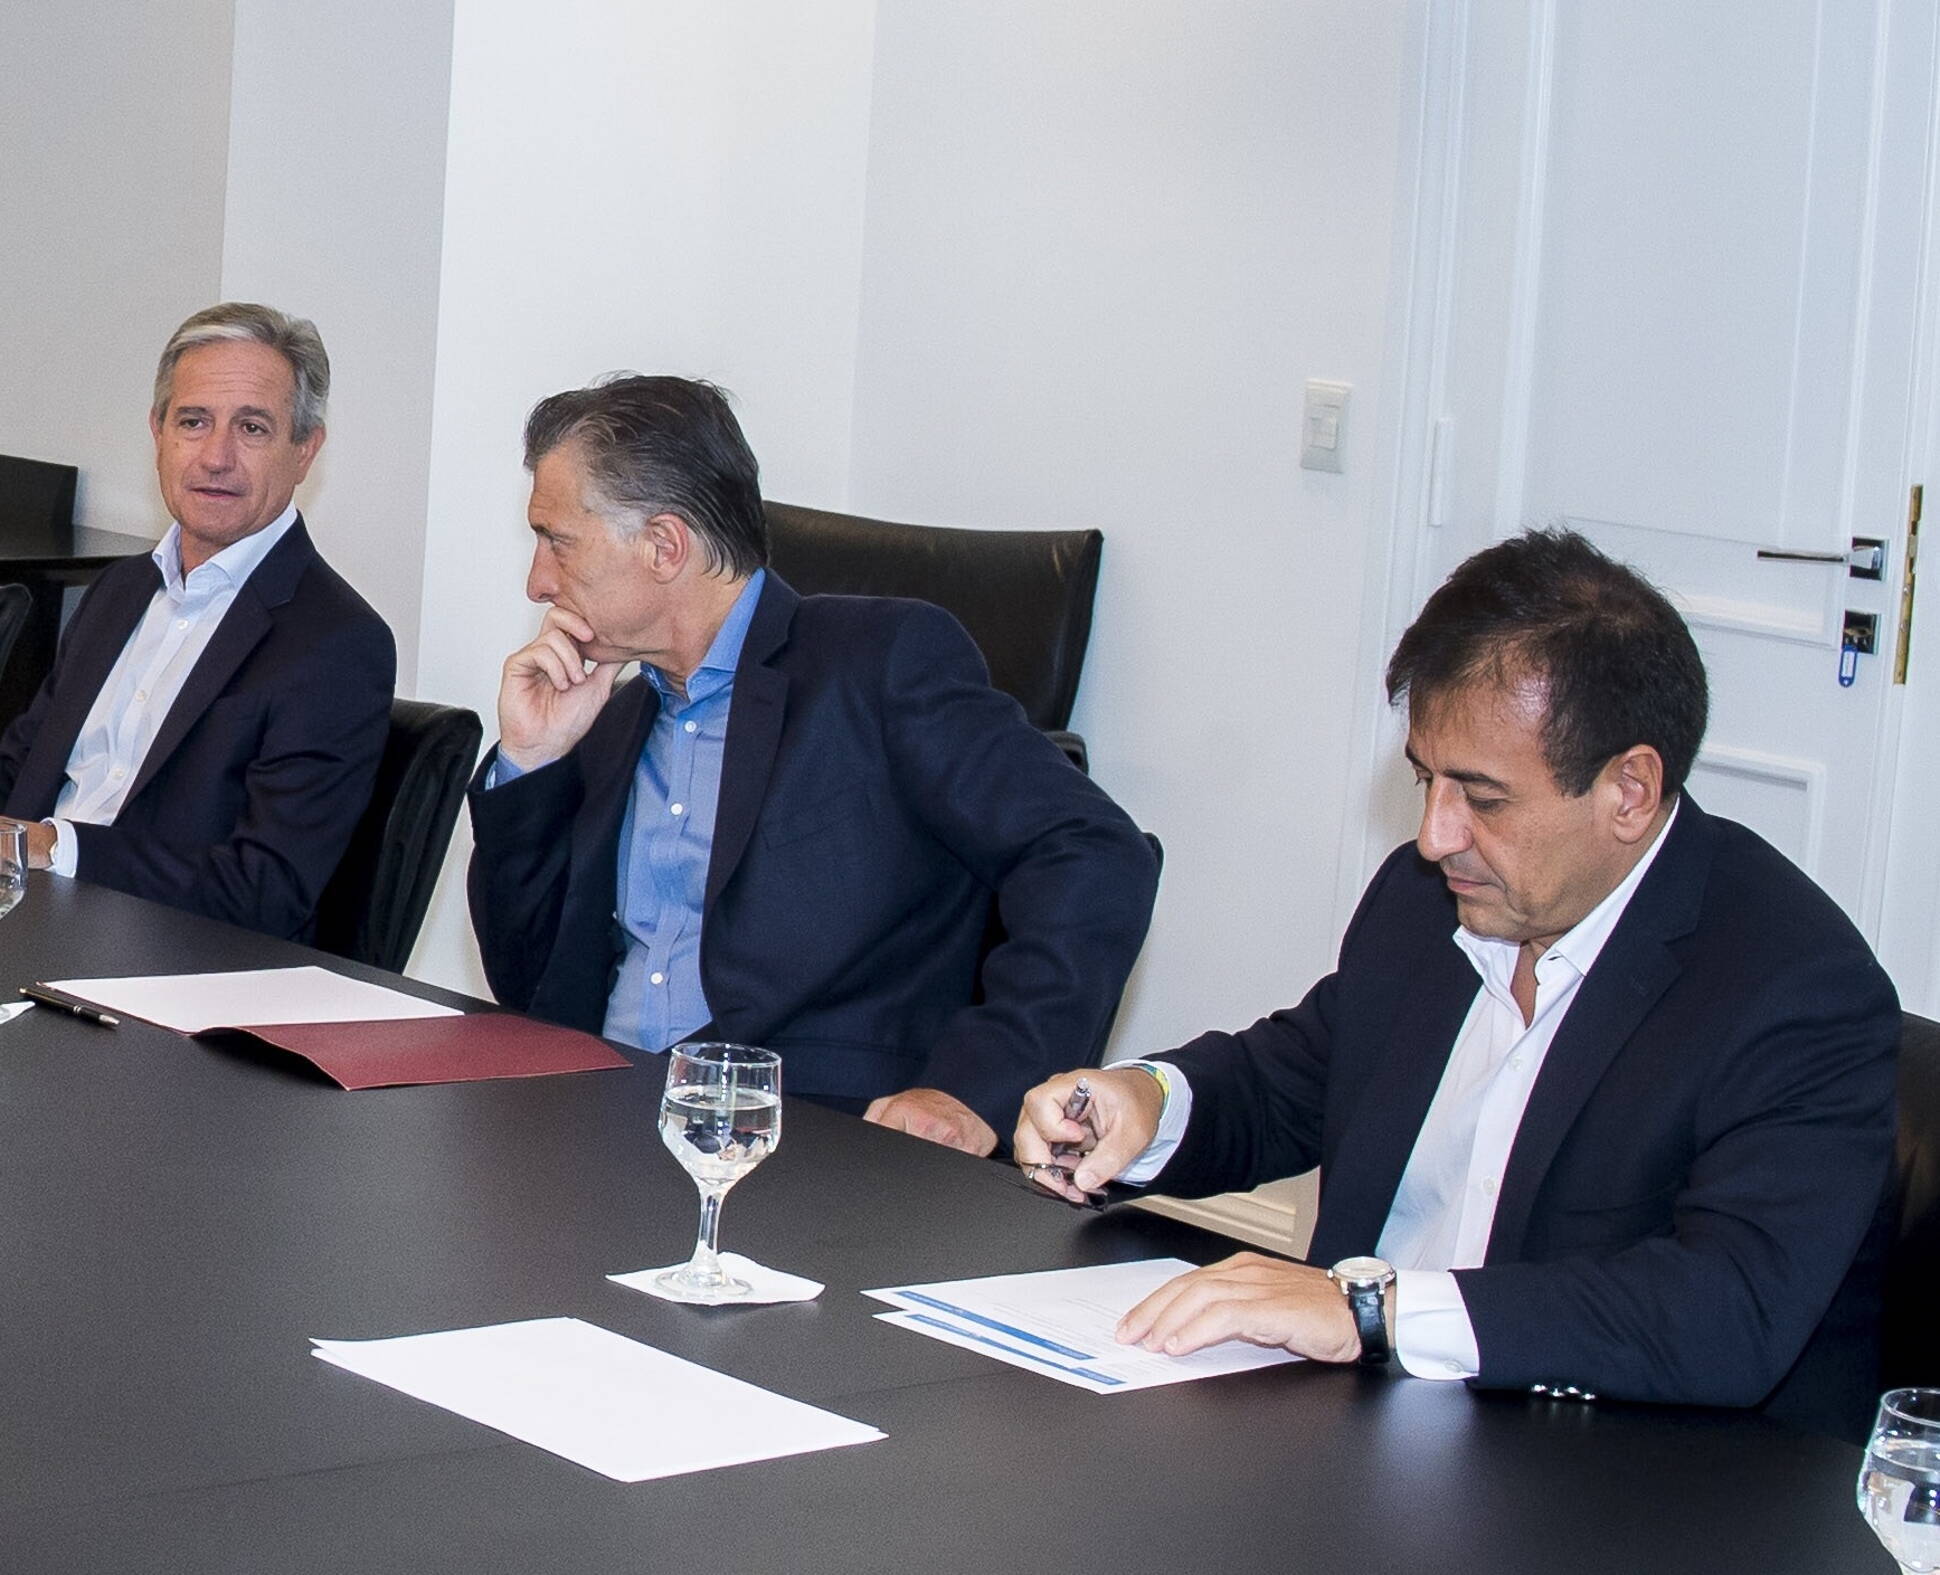 El presidente Macri encabezó una reunión de seguimiento de gestión del Ministerio de Modernización